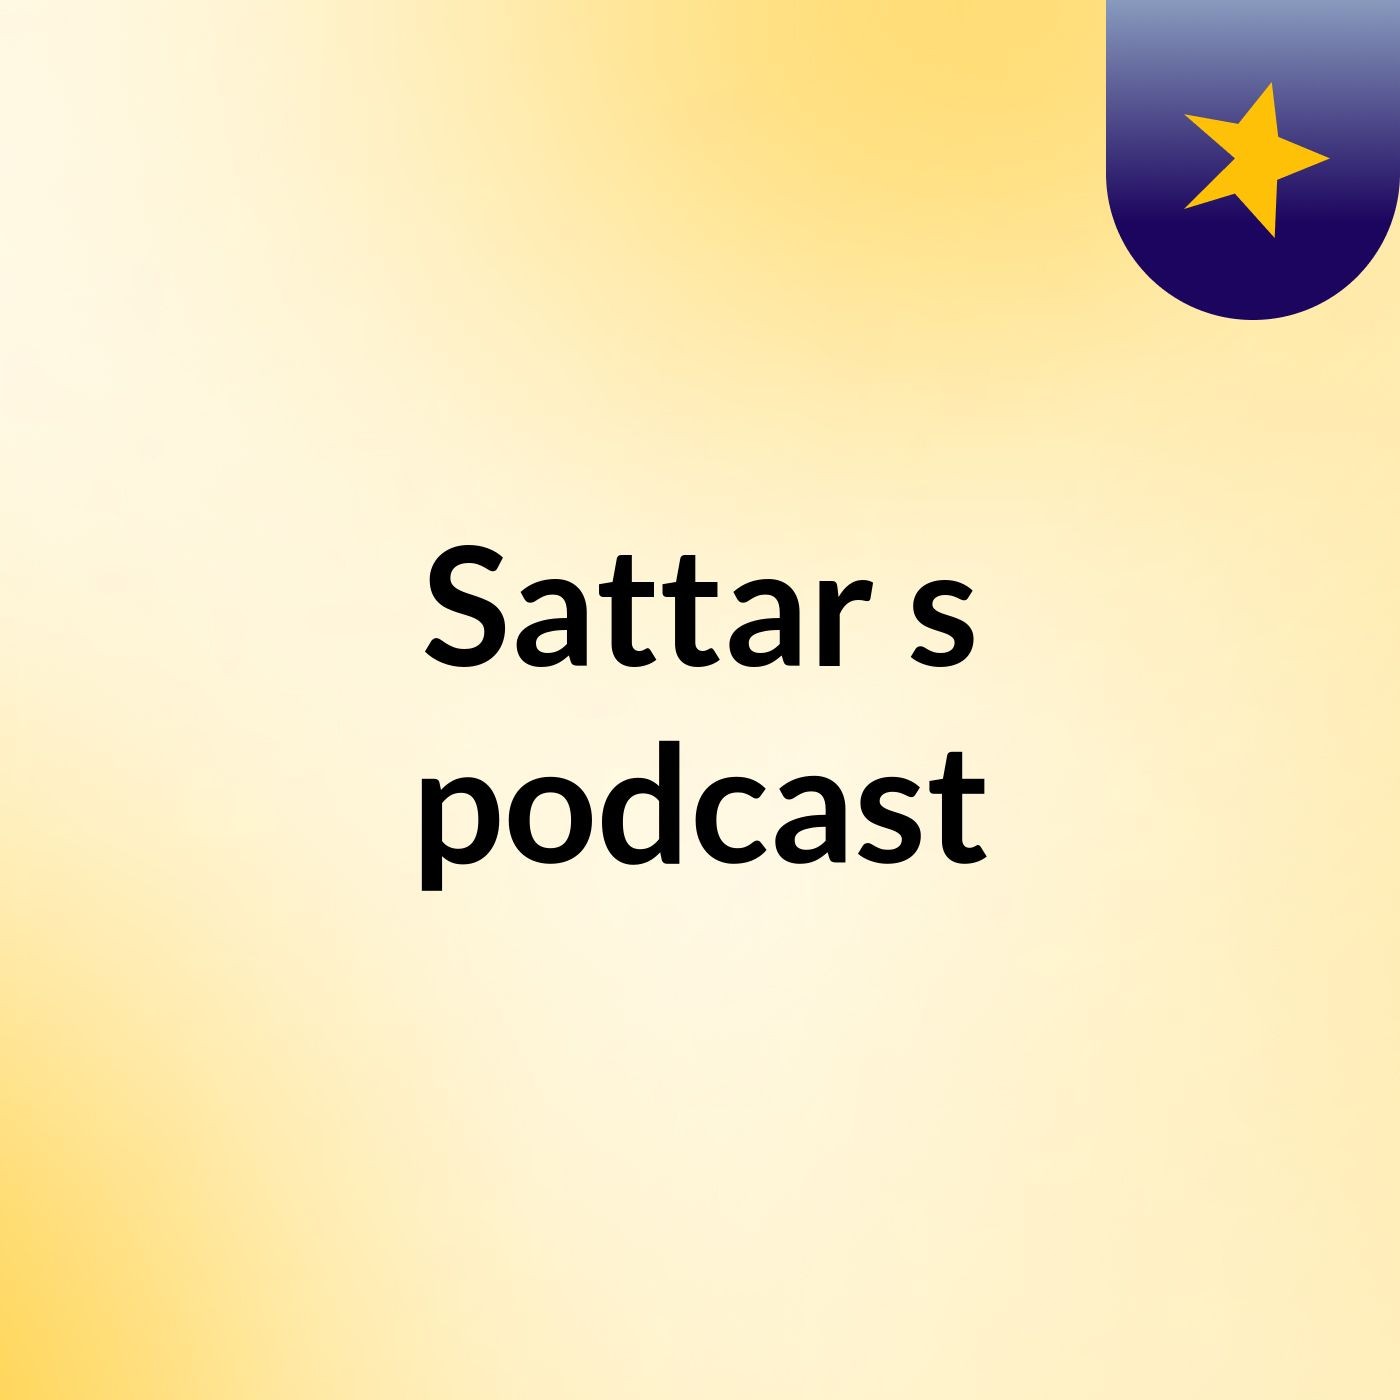 Sattar's podcast